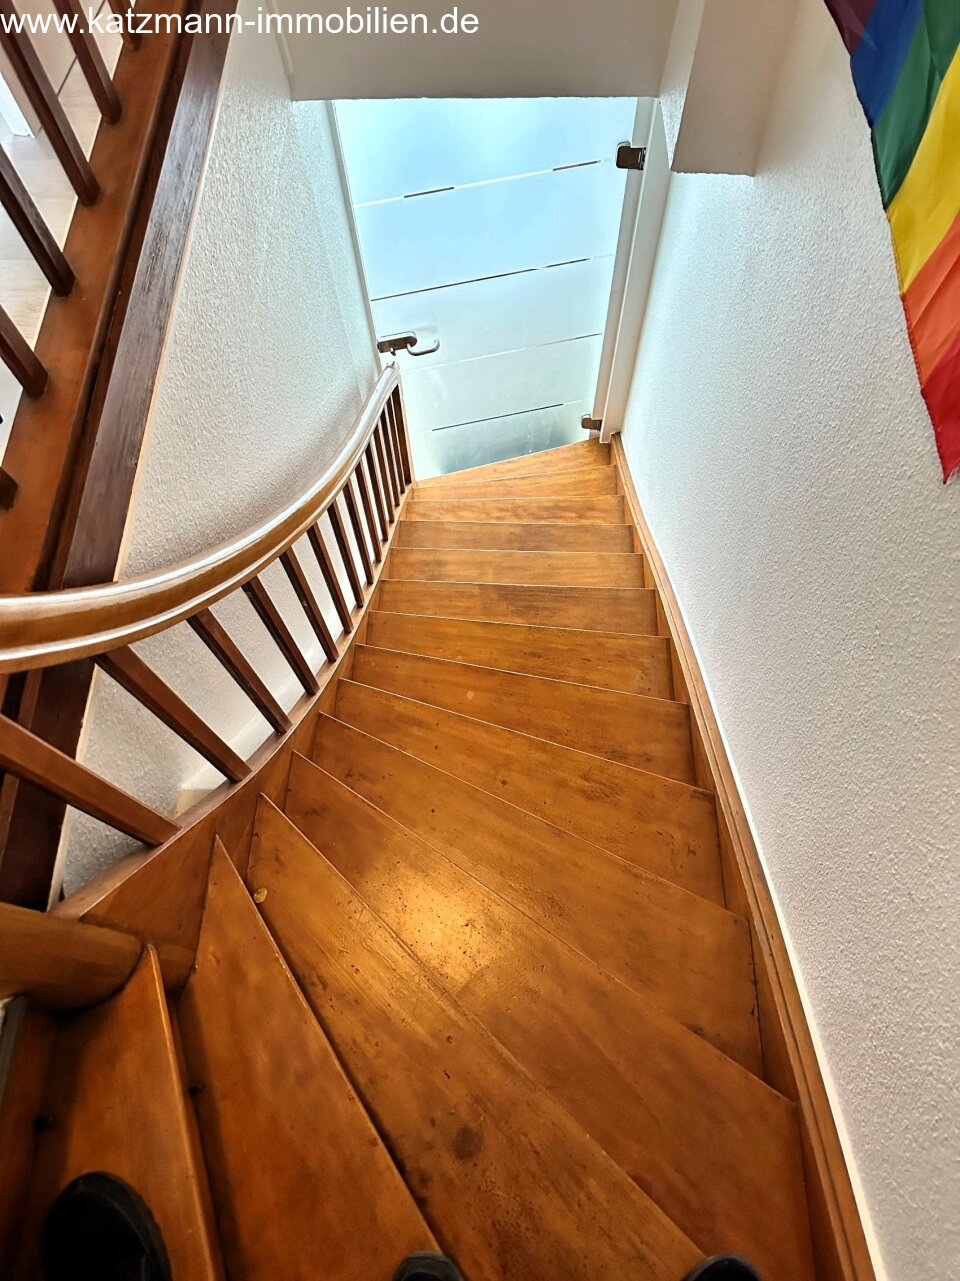 Treppenhaus MFH WE2 mit Blick zur Tür im UG